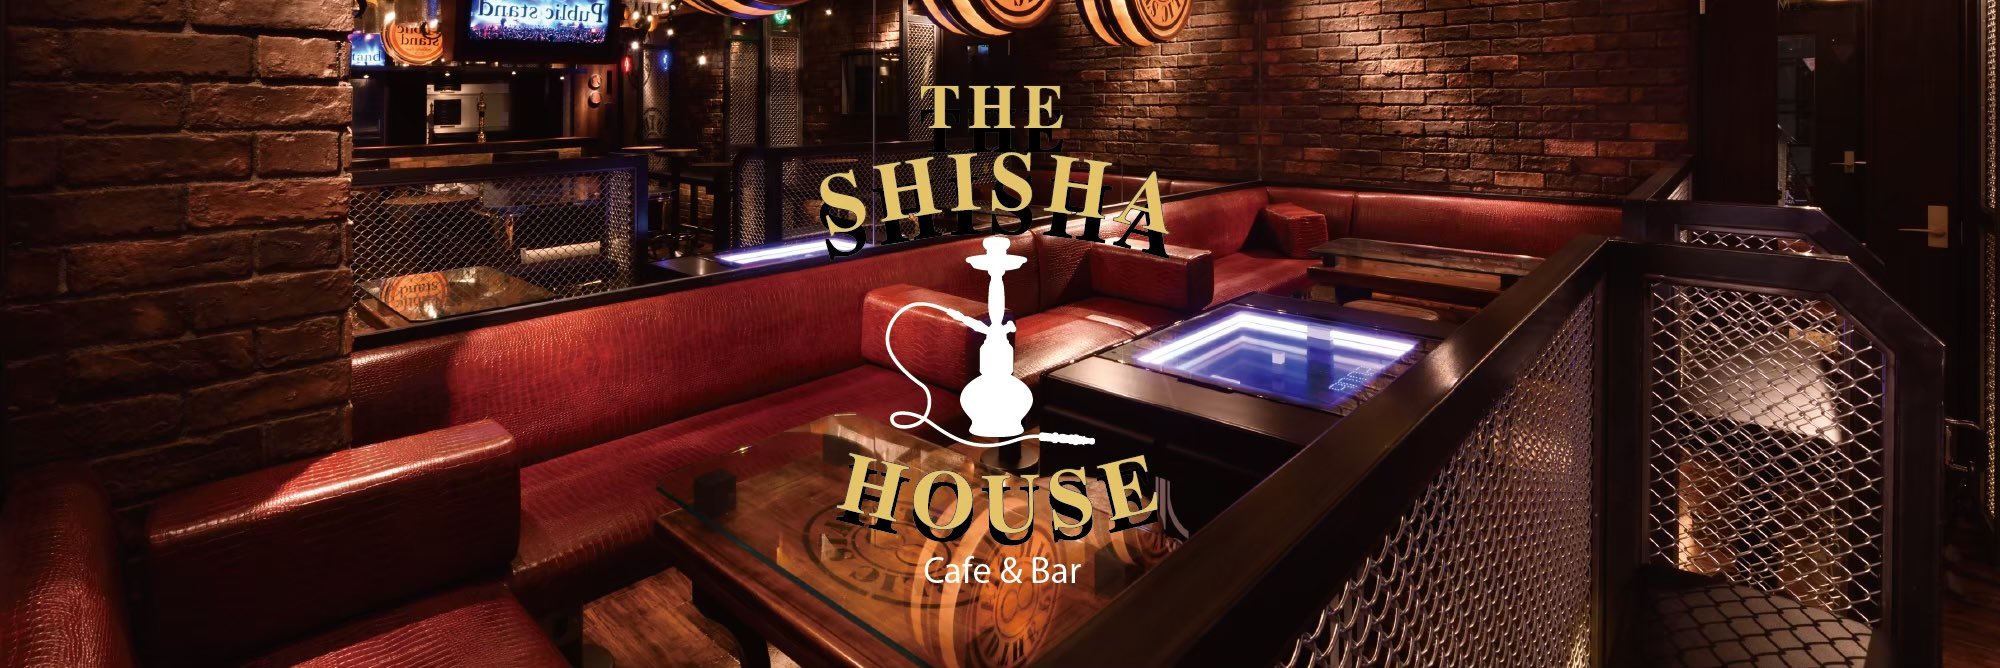 The Shisha House 恵比寿店 シーシャ 水タバコ専門店シーシャハウス Shishahouseebi Twitter